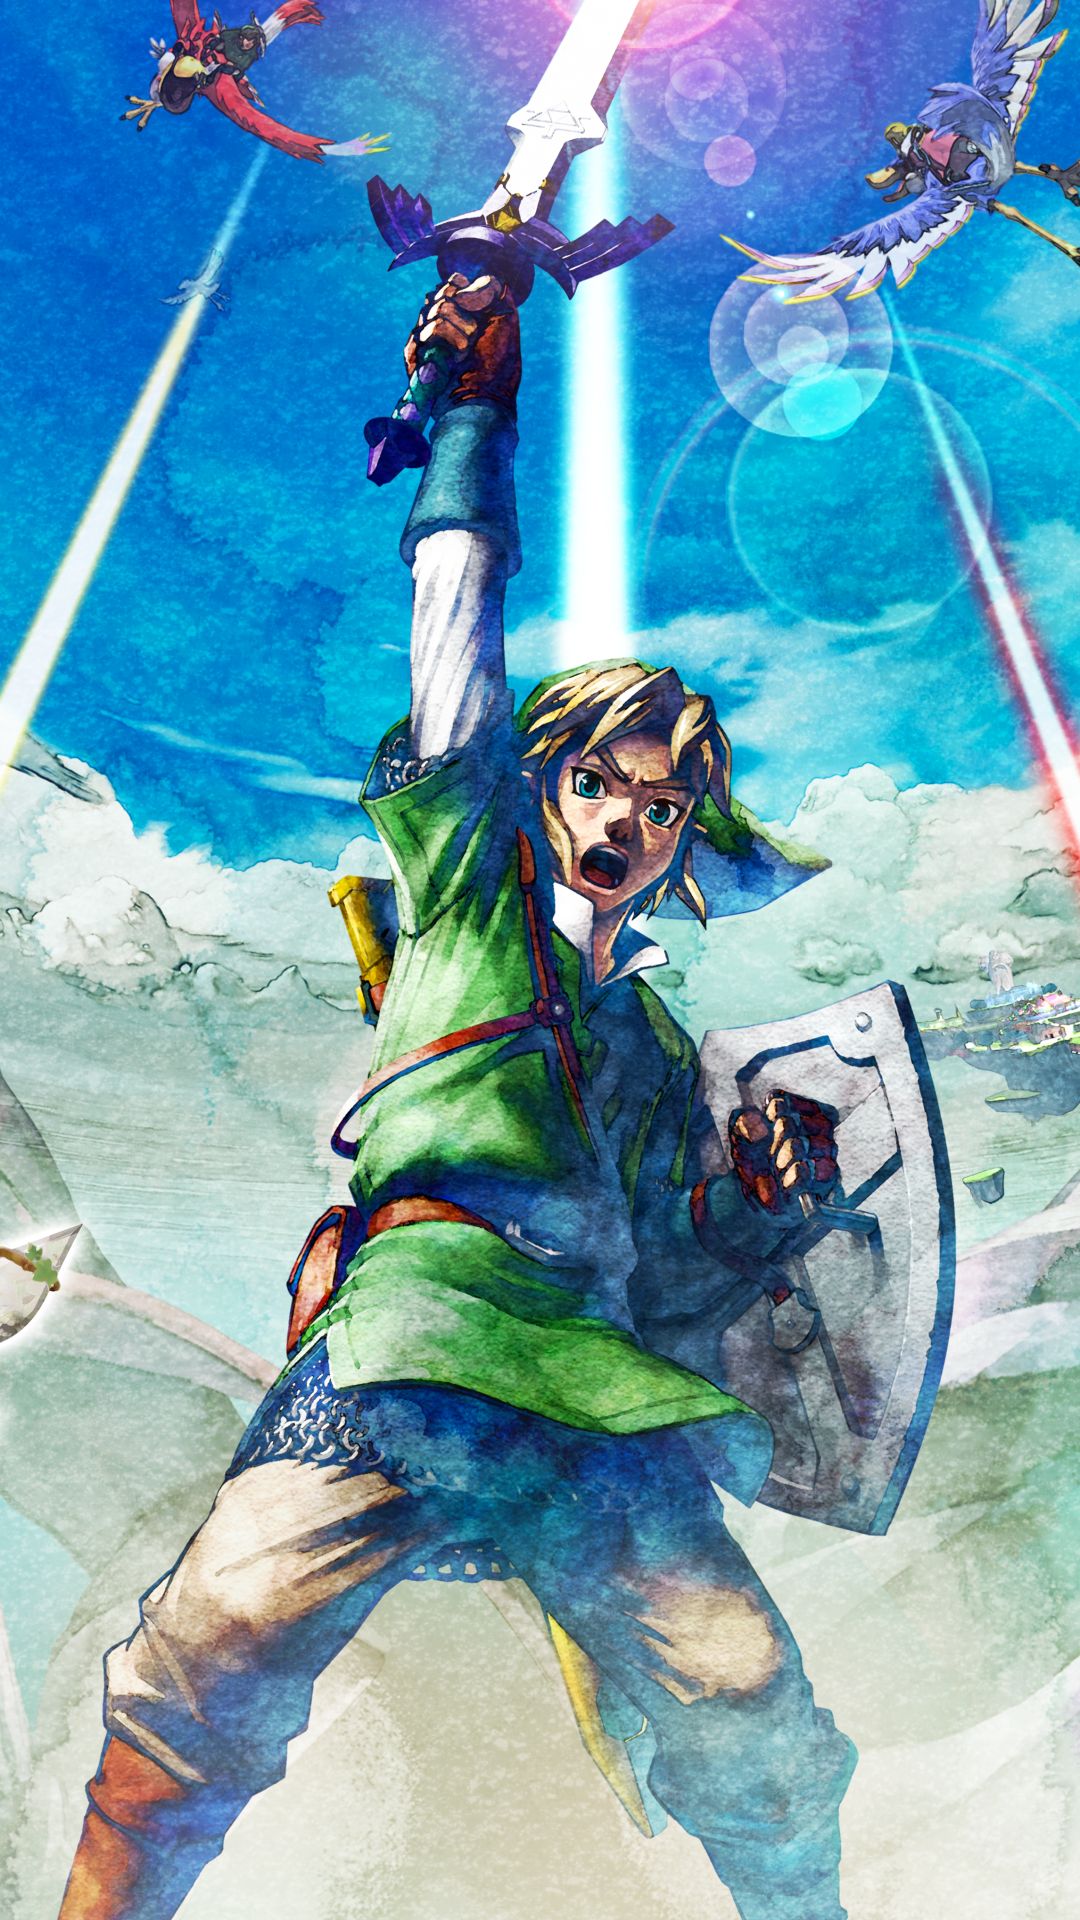 Скачать обои Легенда О Zelda: Skyward Sword Hd на телефон бесплатно